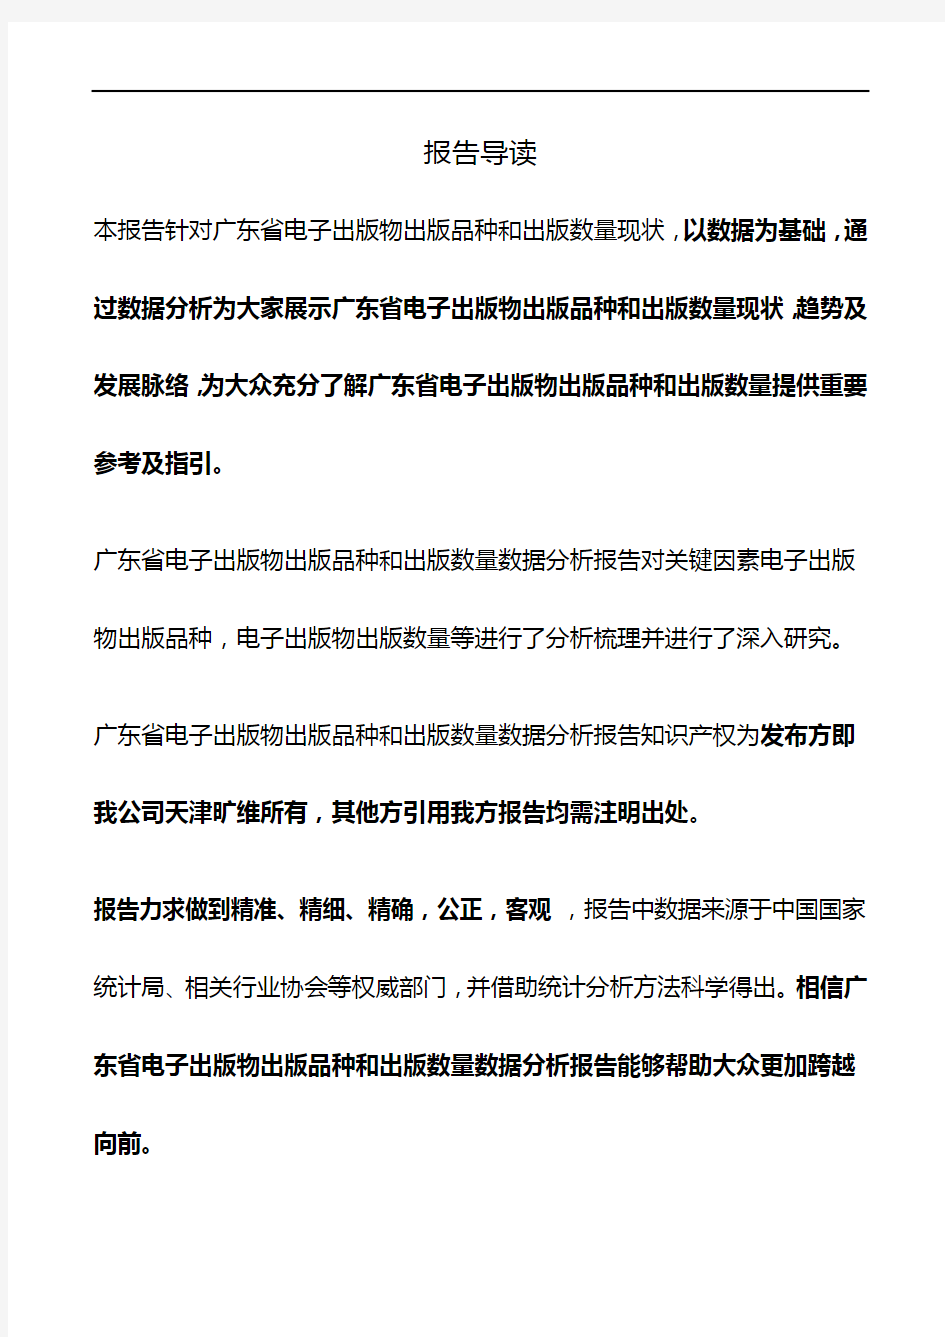 广东省电子出版物出版品种和出版数量3年数据分析报告2019版